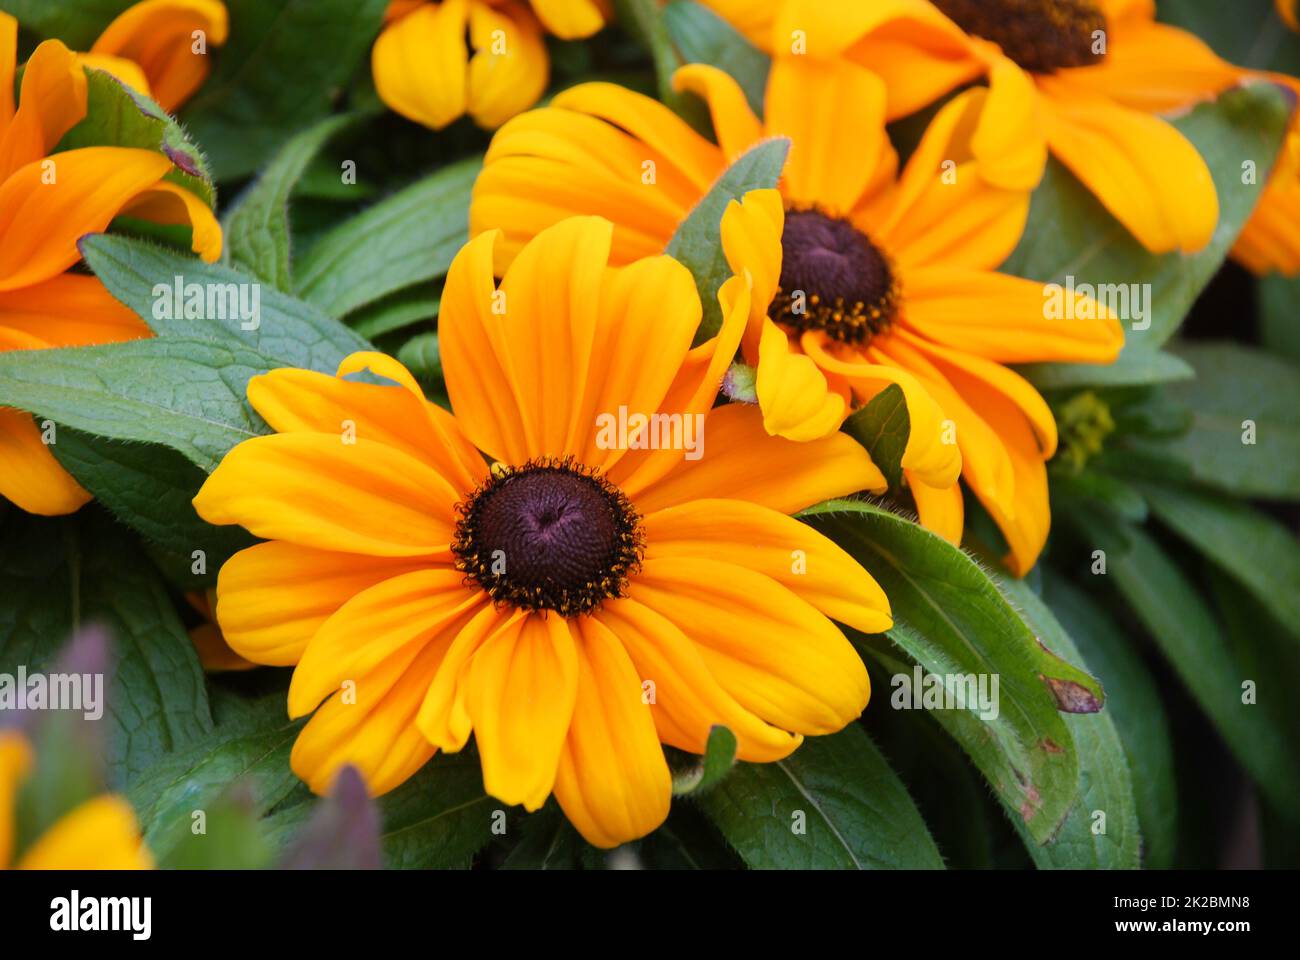 Susans jaune à yeux noirs, Rudbeckia hirta, fleurit dans un jardin d'été Banque D'Images